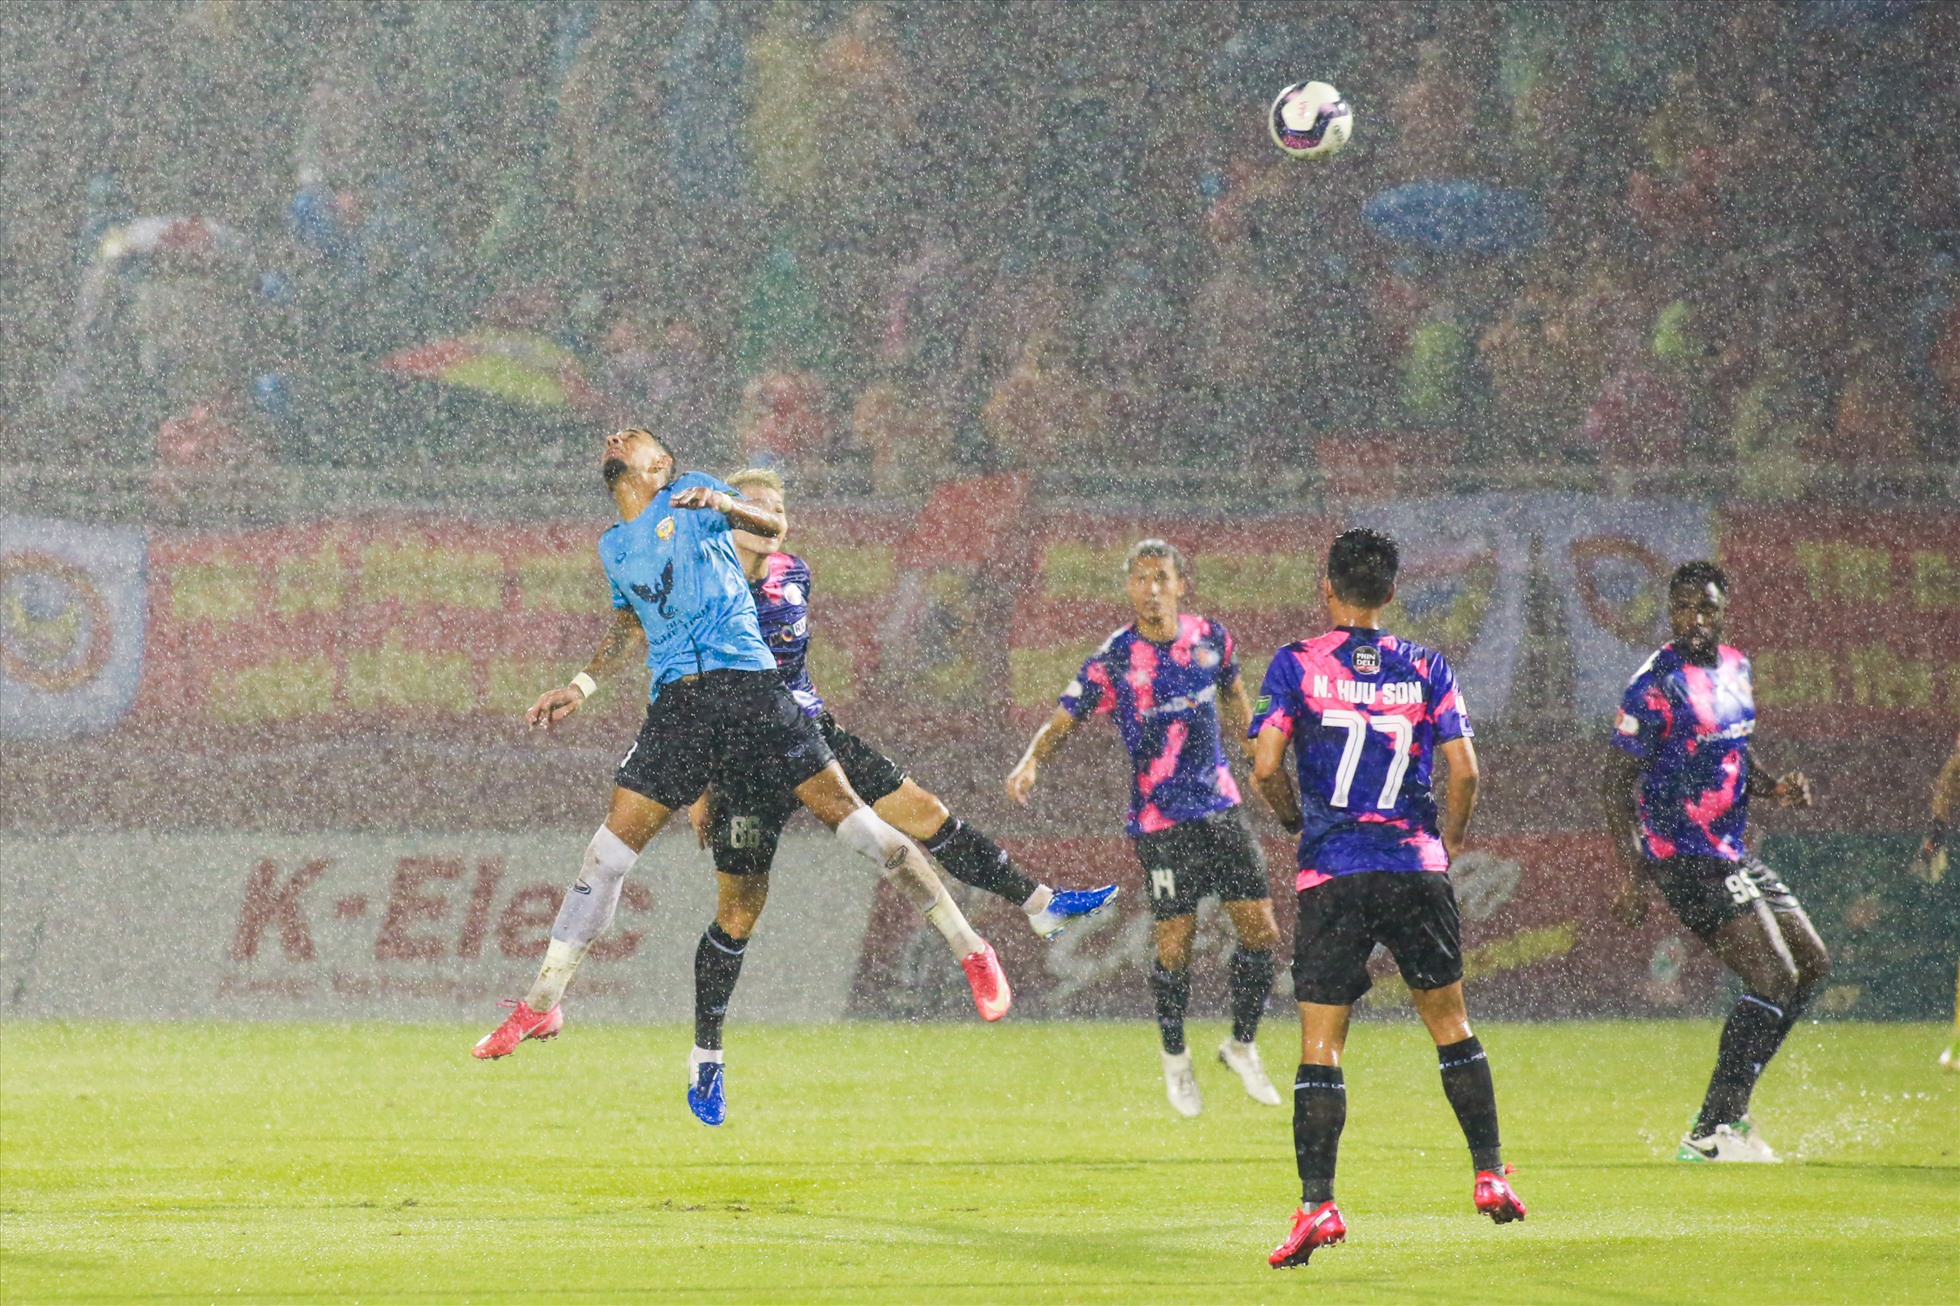 Cả Sài Gòn FC và Hồng Lĩnh Hà Tĩnh gặp nhiều khó khăn trong trận đấu tối 27.8 khi sân Thống Nhất xuất hiện mưa lớn ngay đầu trận.